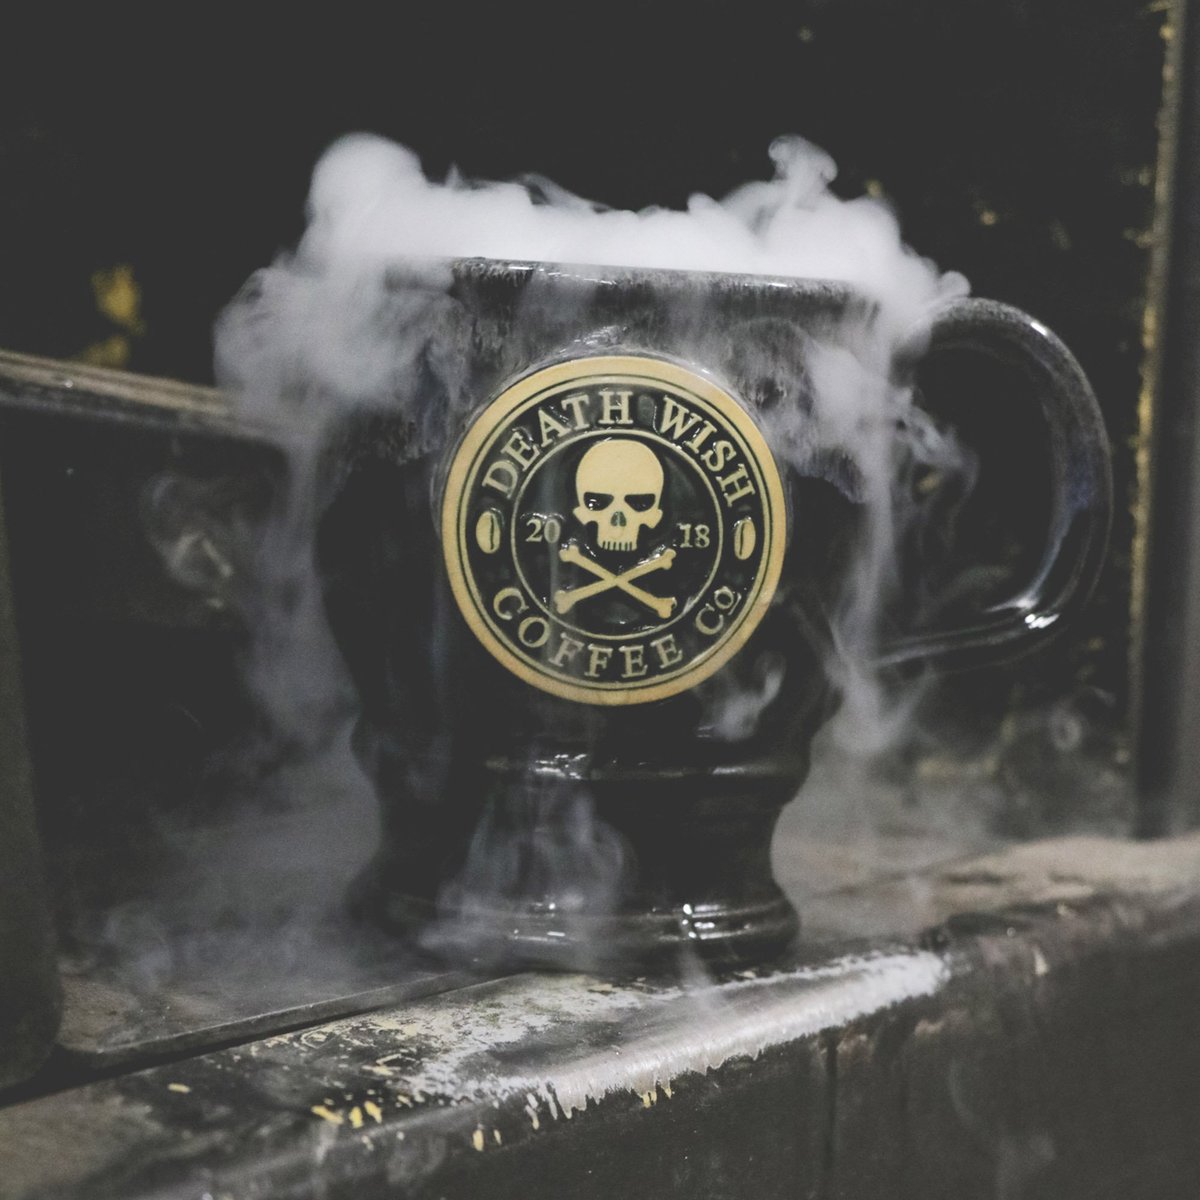 A brew of steam фото 69